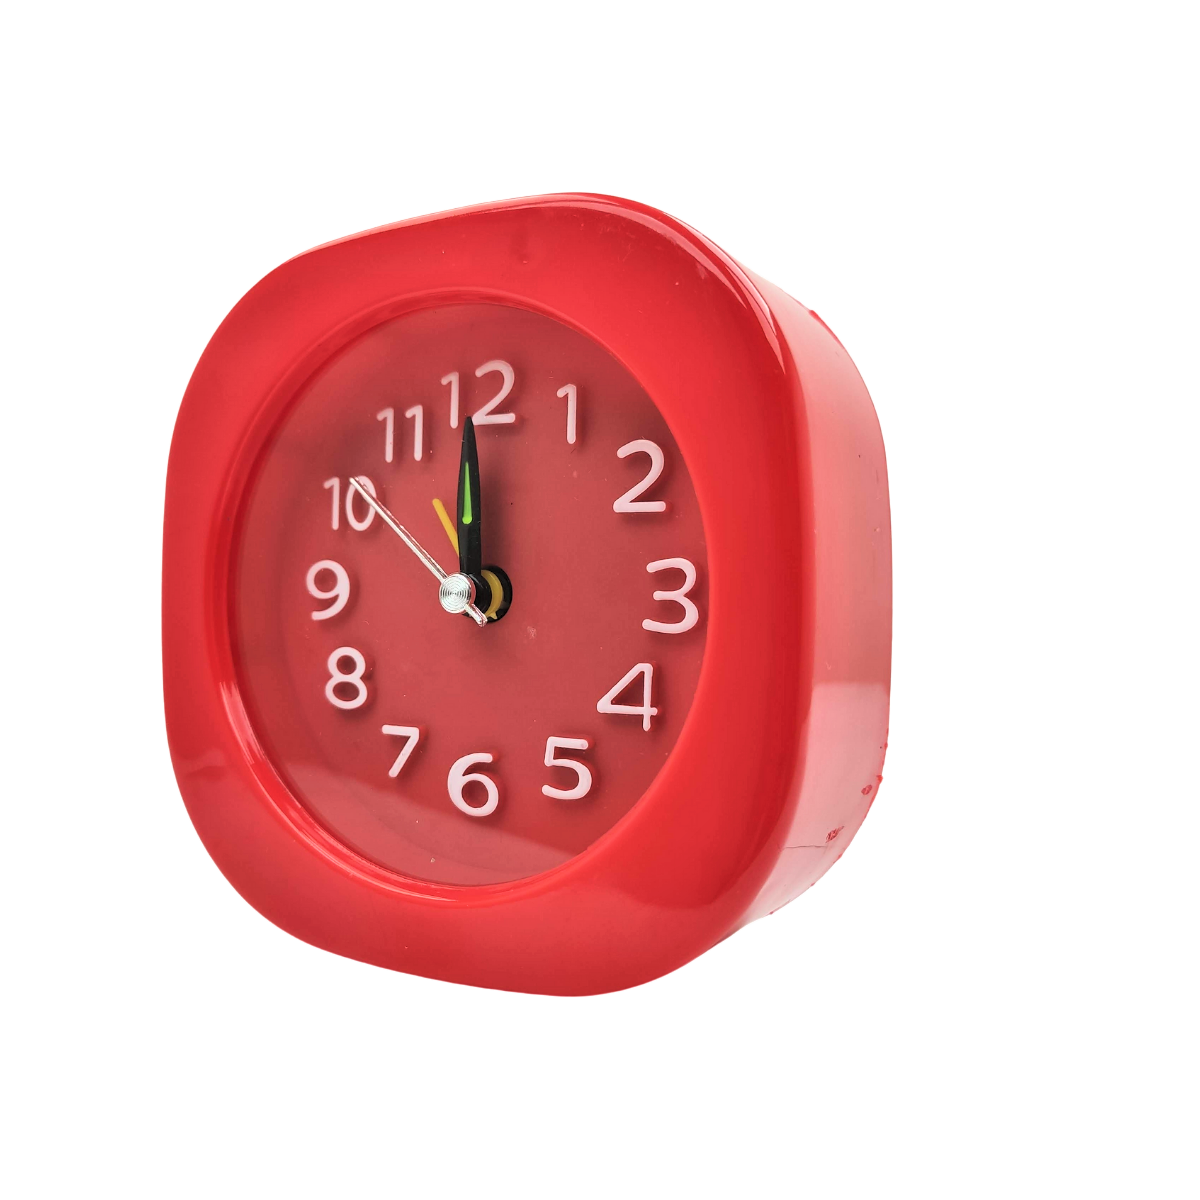 Relógio Despertador Retrô de Cabeceira Alarme Analogico Colorido Infantil Pilha Vermelho - 3